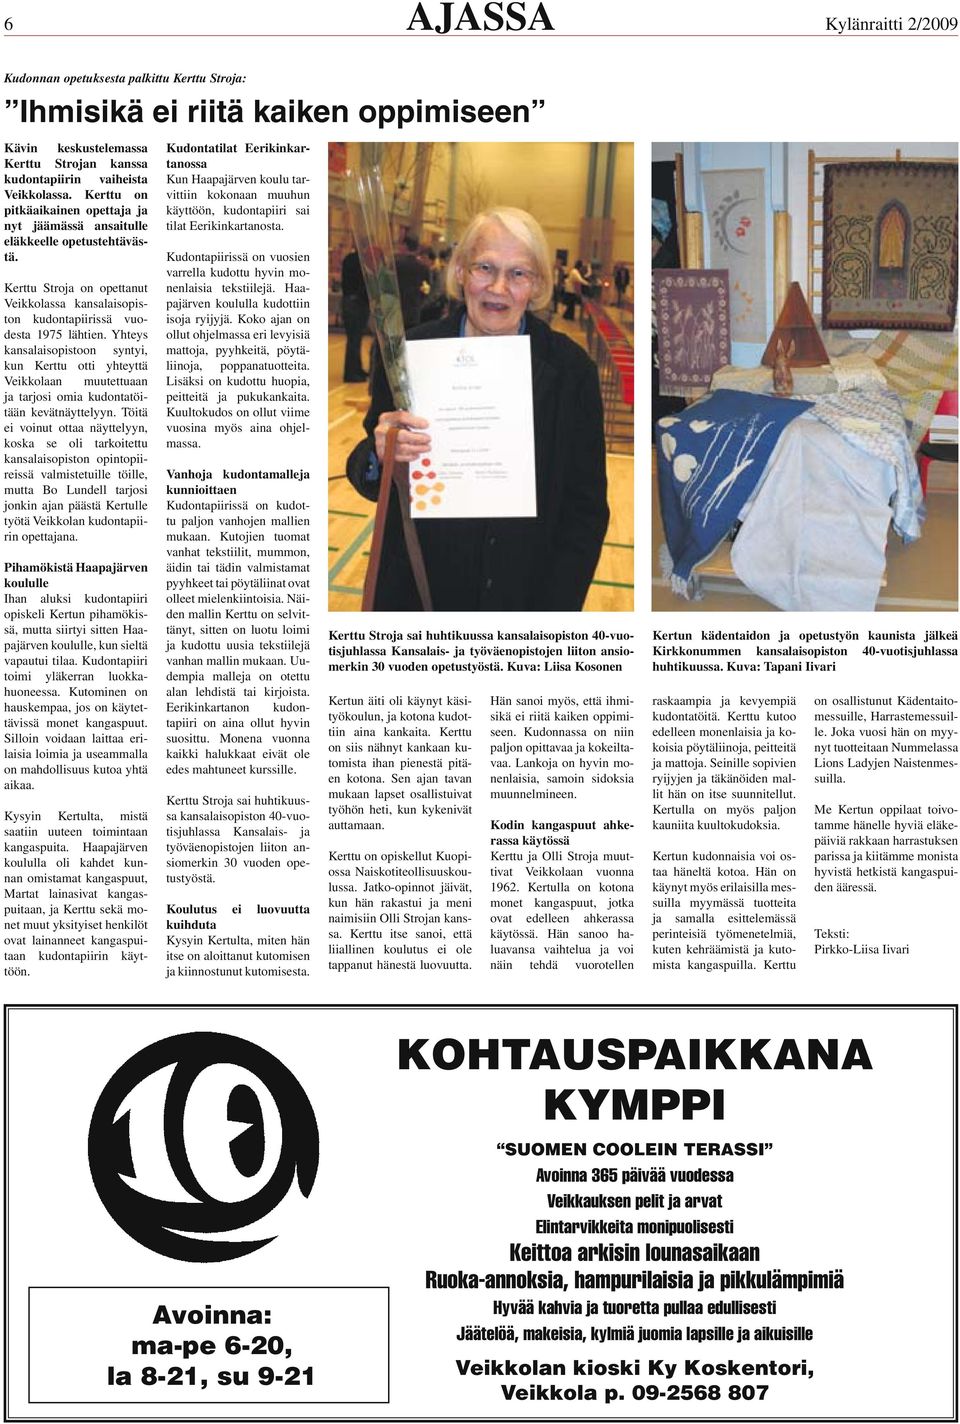 Yhteys kansalaisopistoon syntyi, kun Kerttu otti yhteyttä Veikkolaan muutettuaan ja tarjosi omia kudontatöitään kevätnäyttelyyn.